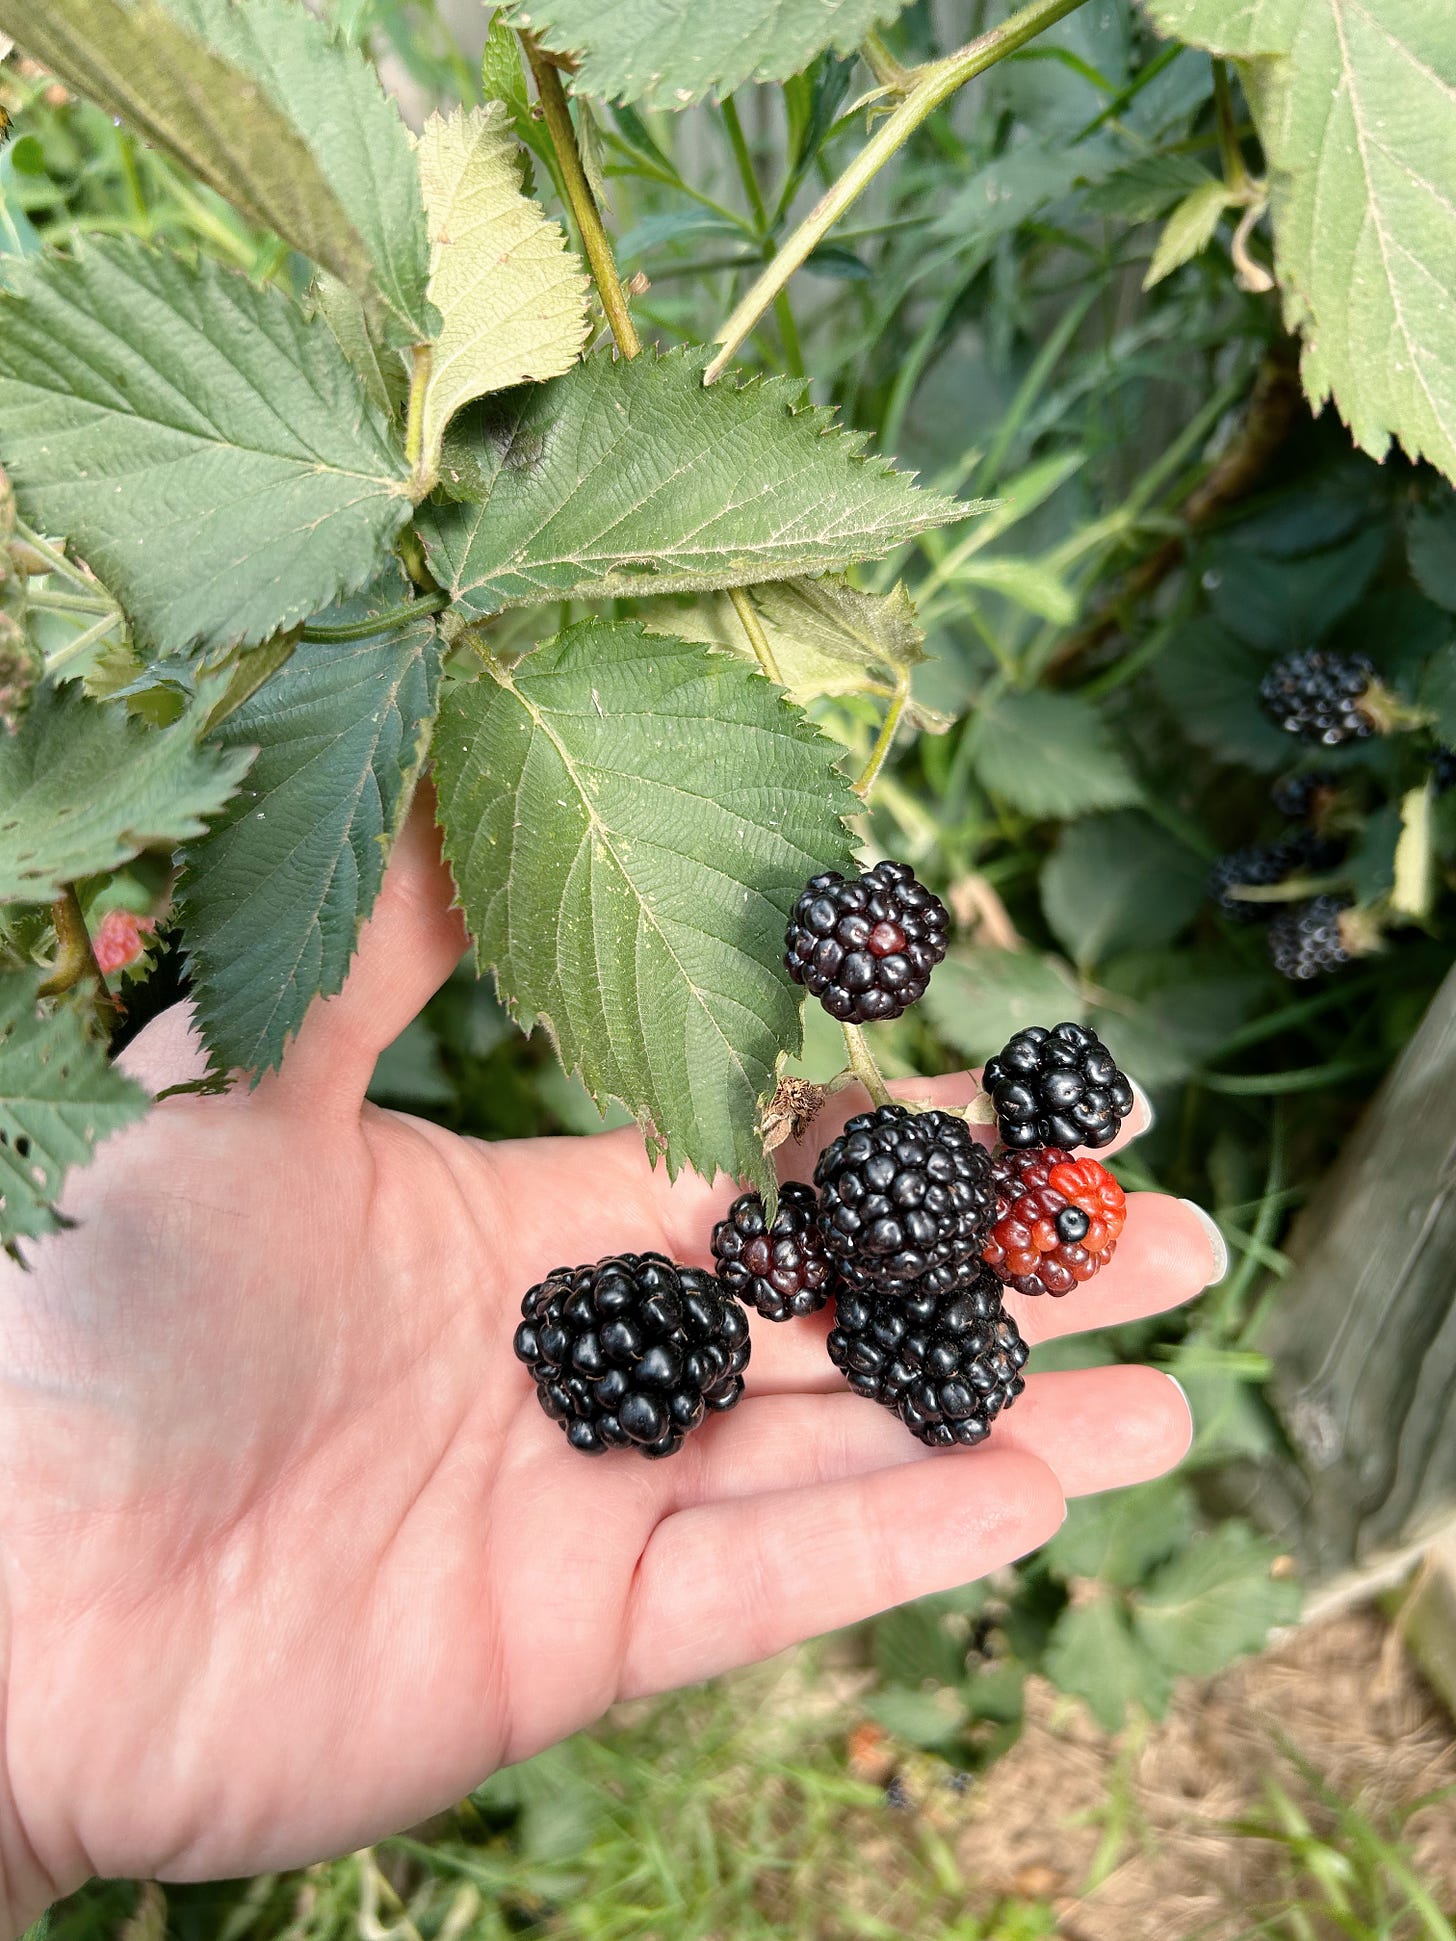 My pale hand behind ripening blackberries.